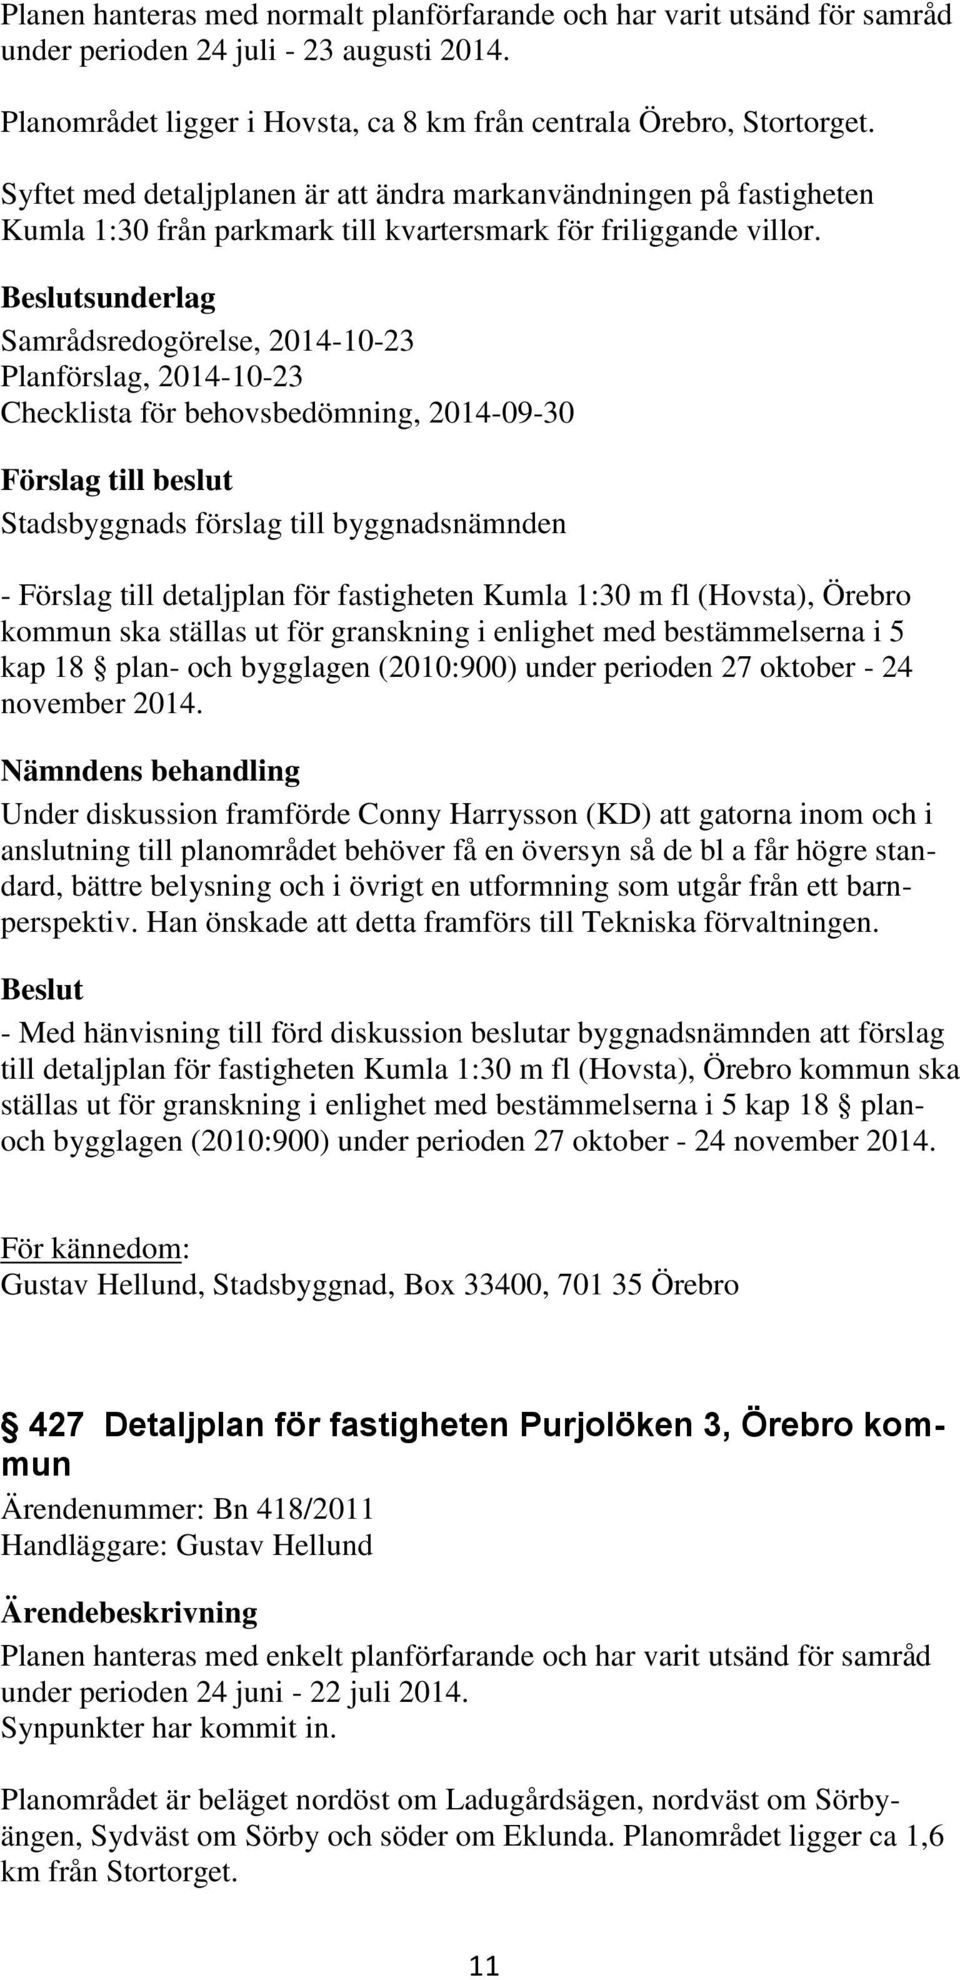 sunderlag Samrådsredogörelse, 2014-10-23 Planförslag, 2014-10-23 Checklista för behovsbedömning, 2014-09-30 - Förslag till detaljplan för fastigheten Kumla 1:30 m fl (Hovsta), Örebro kommun ska